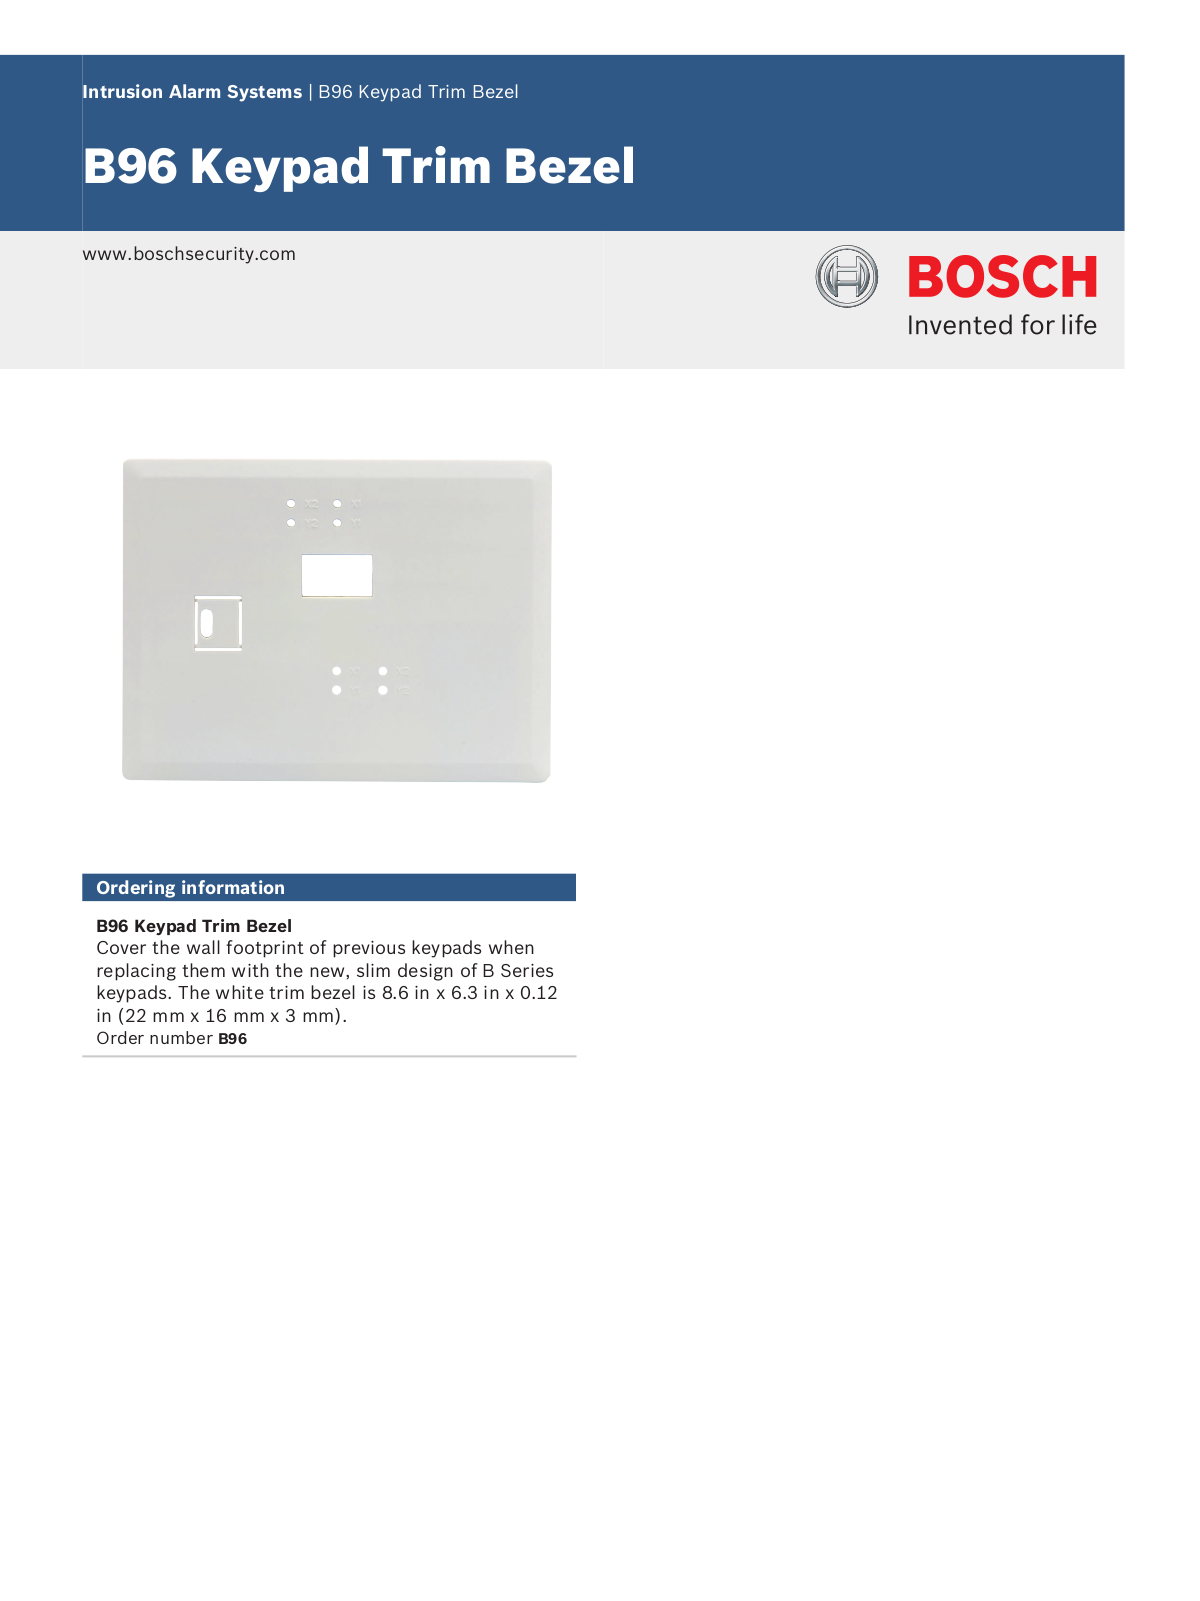 Bosch B96 Specsheet